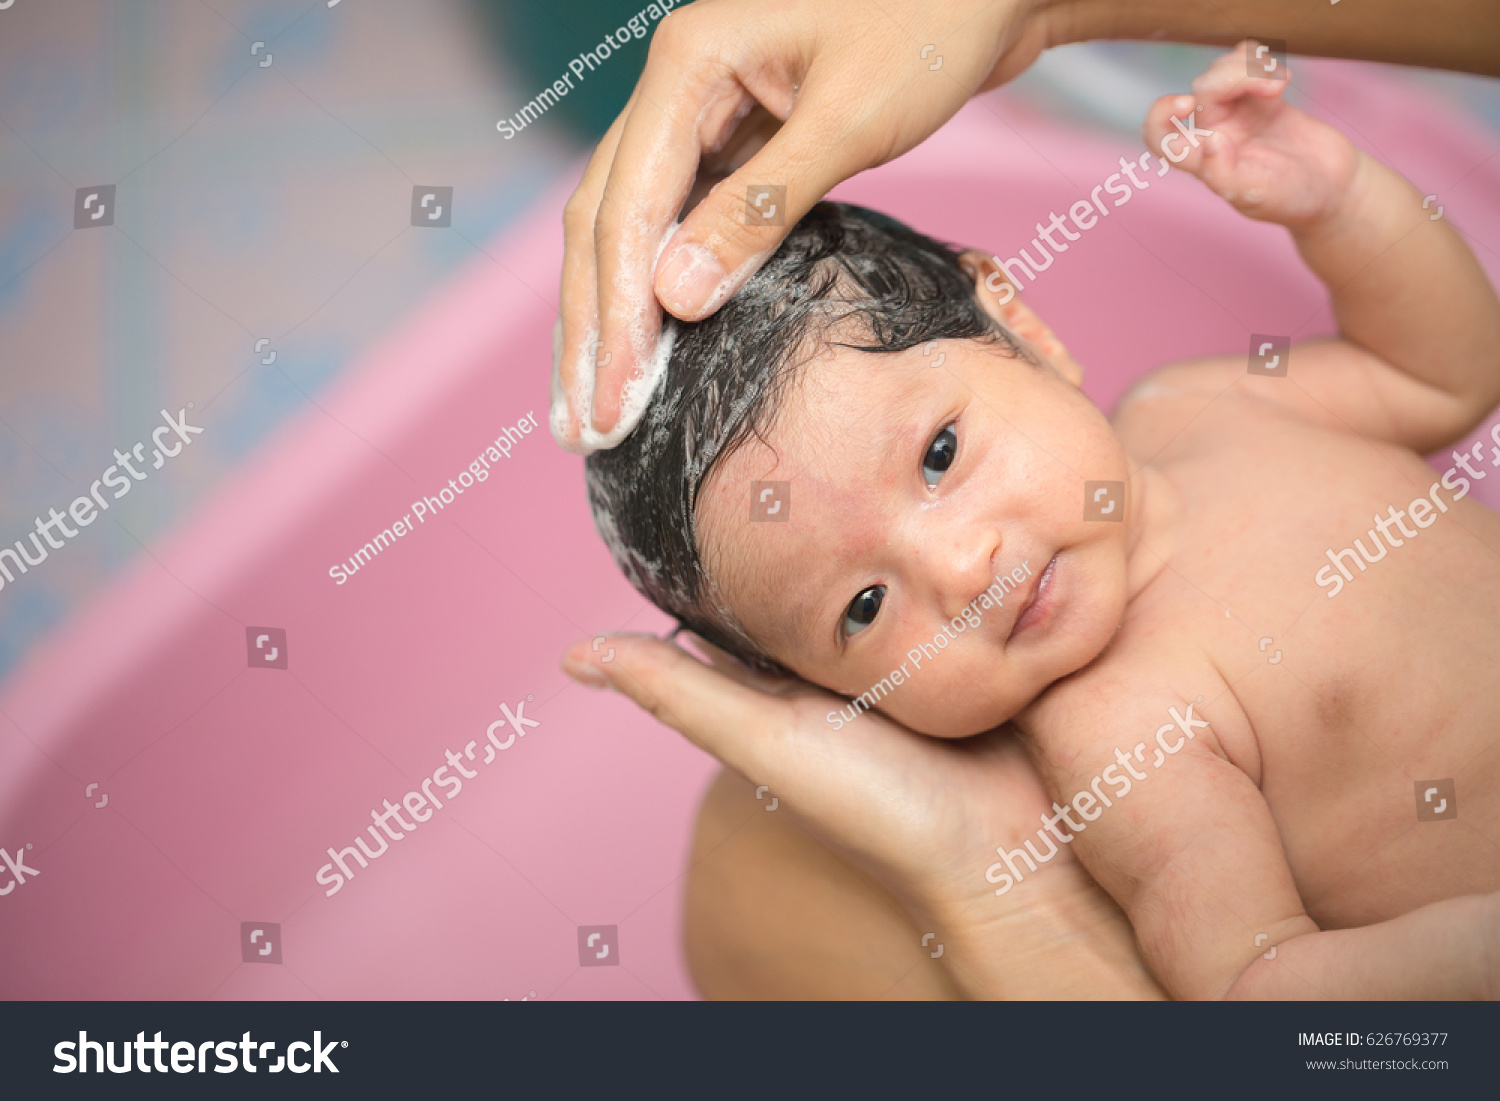 Плачет при купании. Купание младенца. Младенец в ванной. Младенец плачет в ванной. Младенец купается.